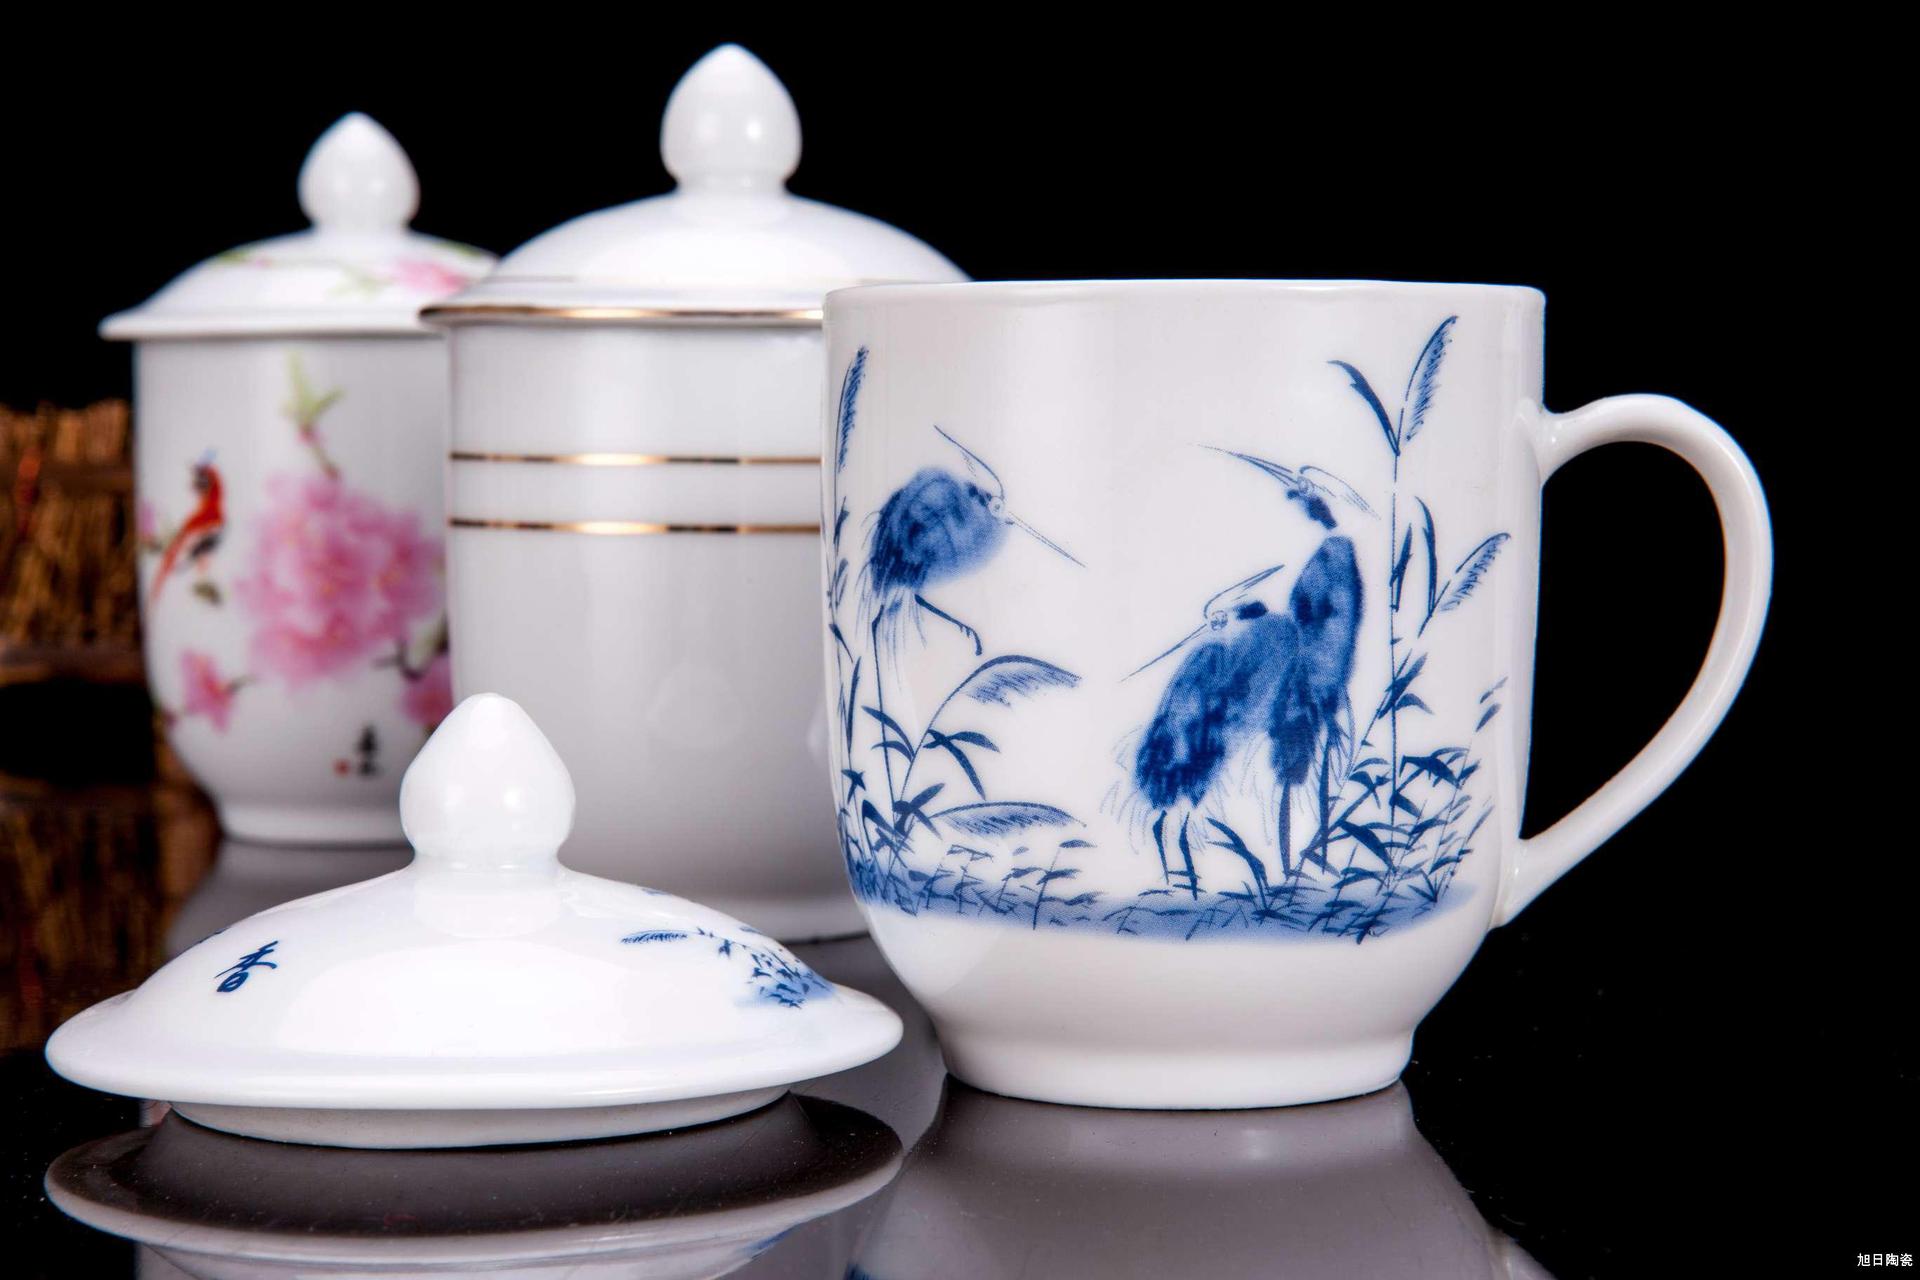 加工定制中 陶瓷用品 陶瓷茶杯定制 家庭饮用陶瓷水杯定制